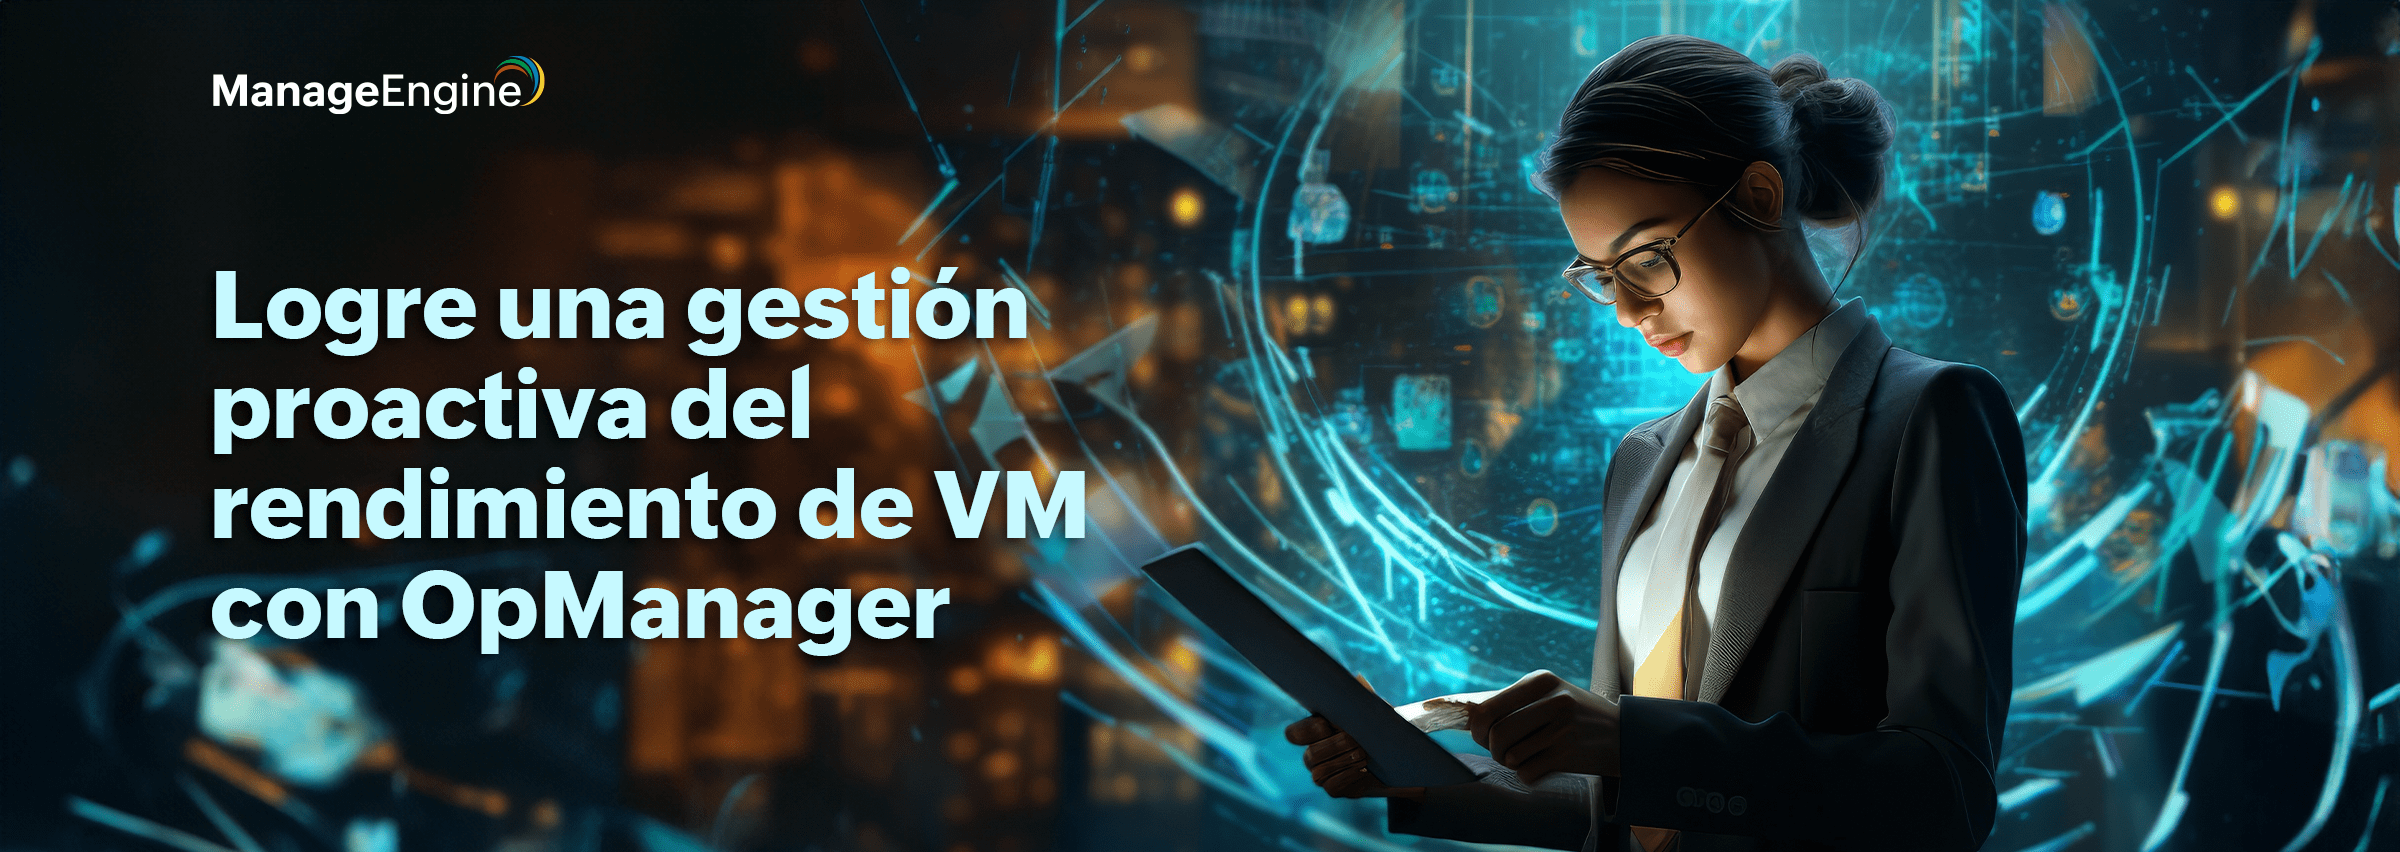 Logre una gestión proactiva del rendimiento de VM con OpManager